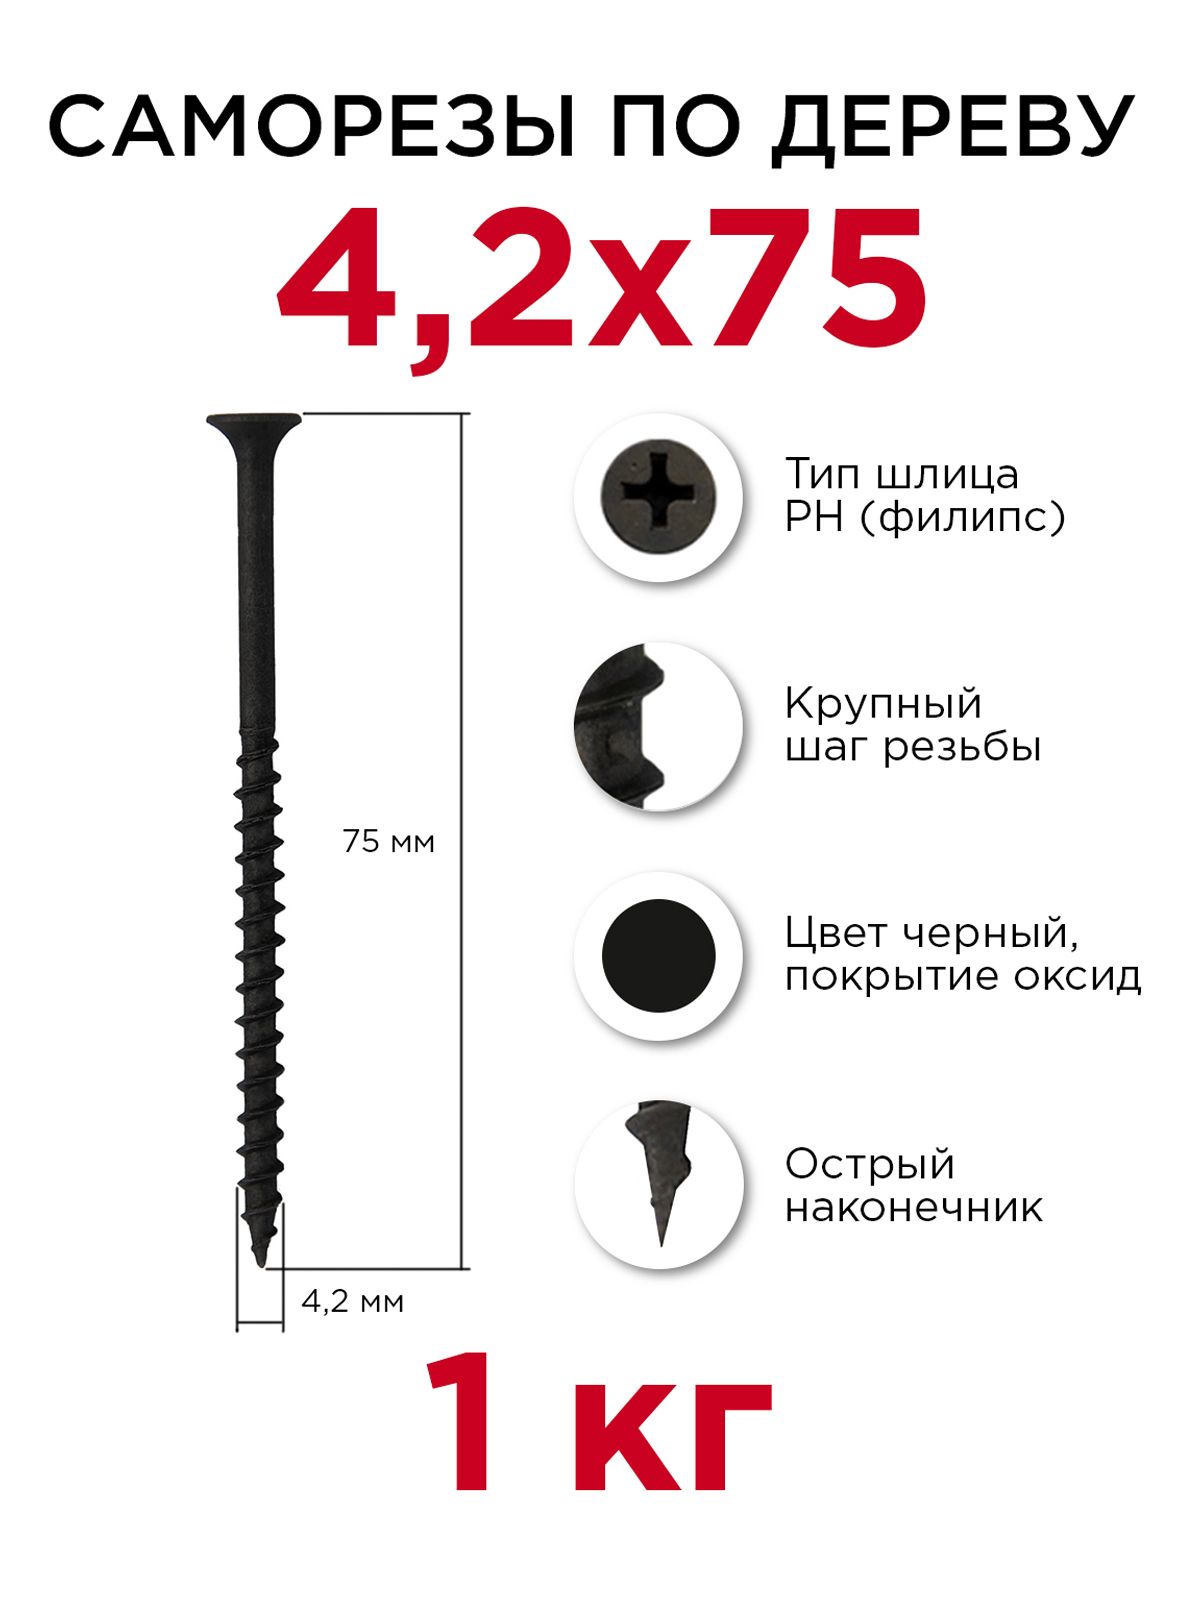 Саморезыподереву,Профикреп4,2x75мм,1кг